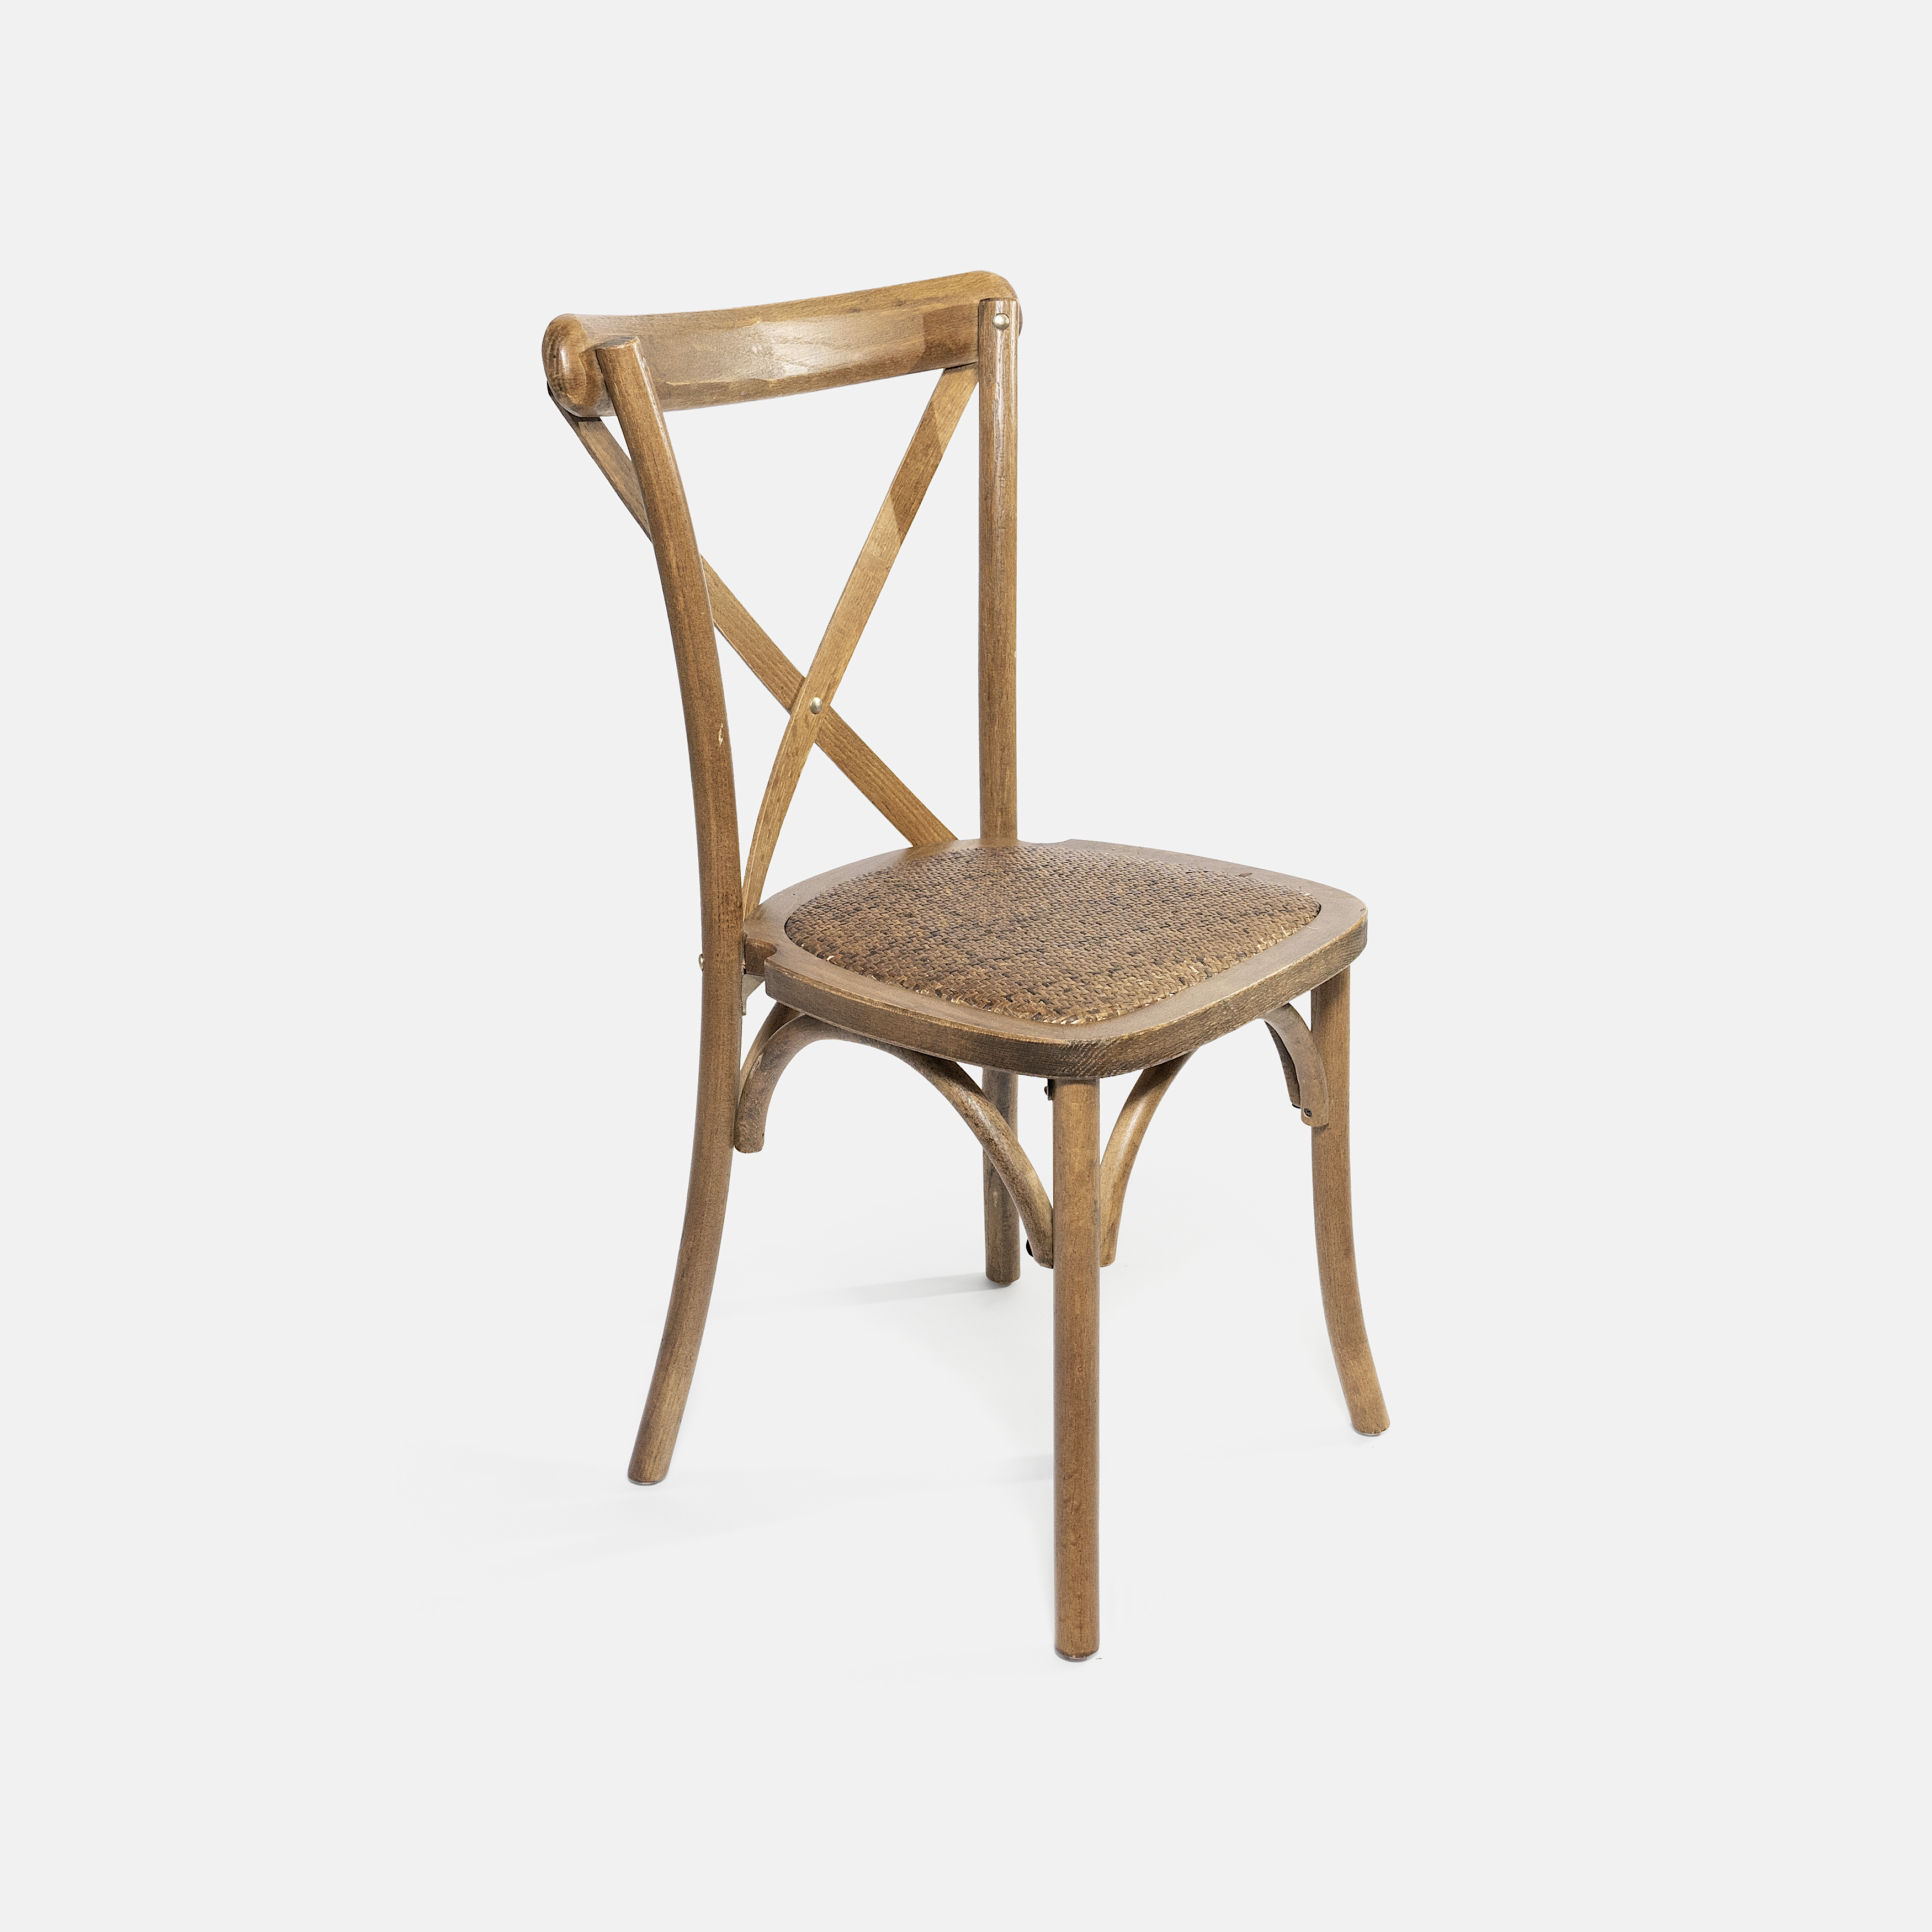 7. Odum Crossback Chair, Raffia Seat